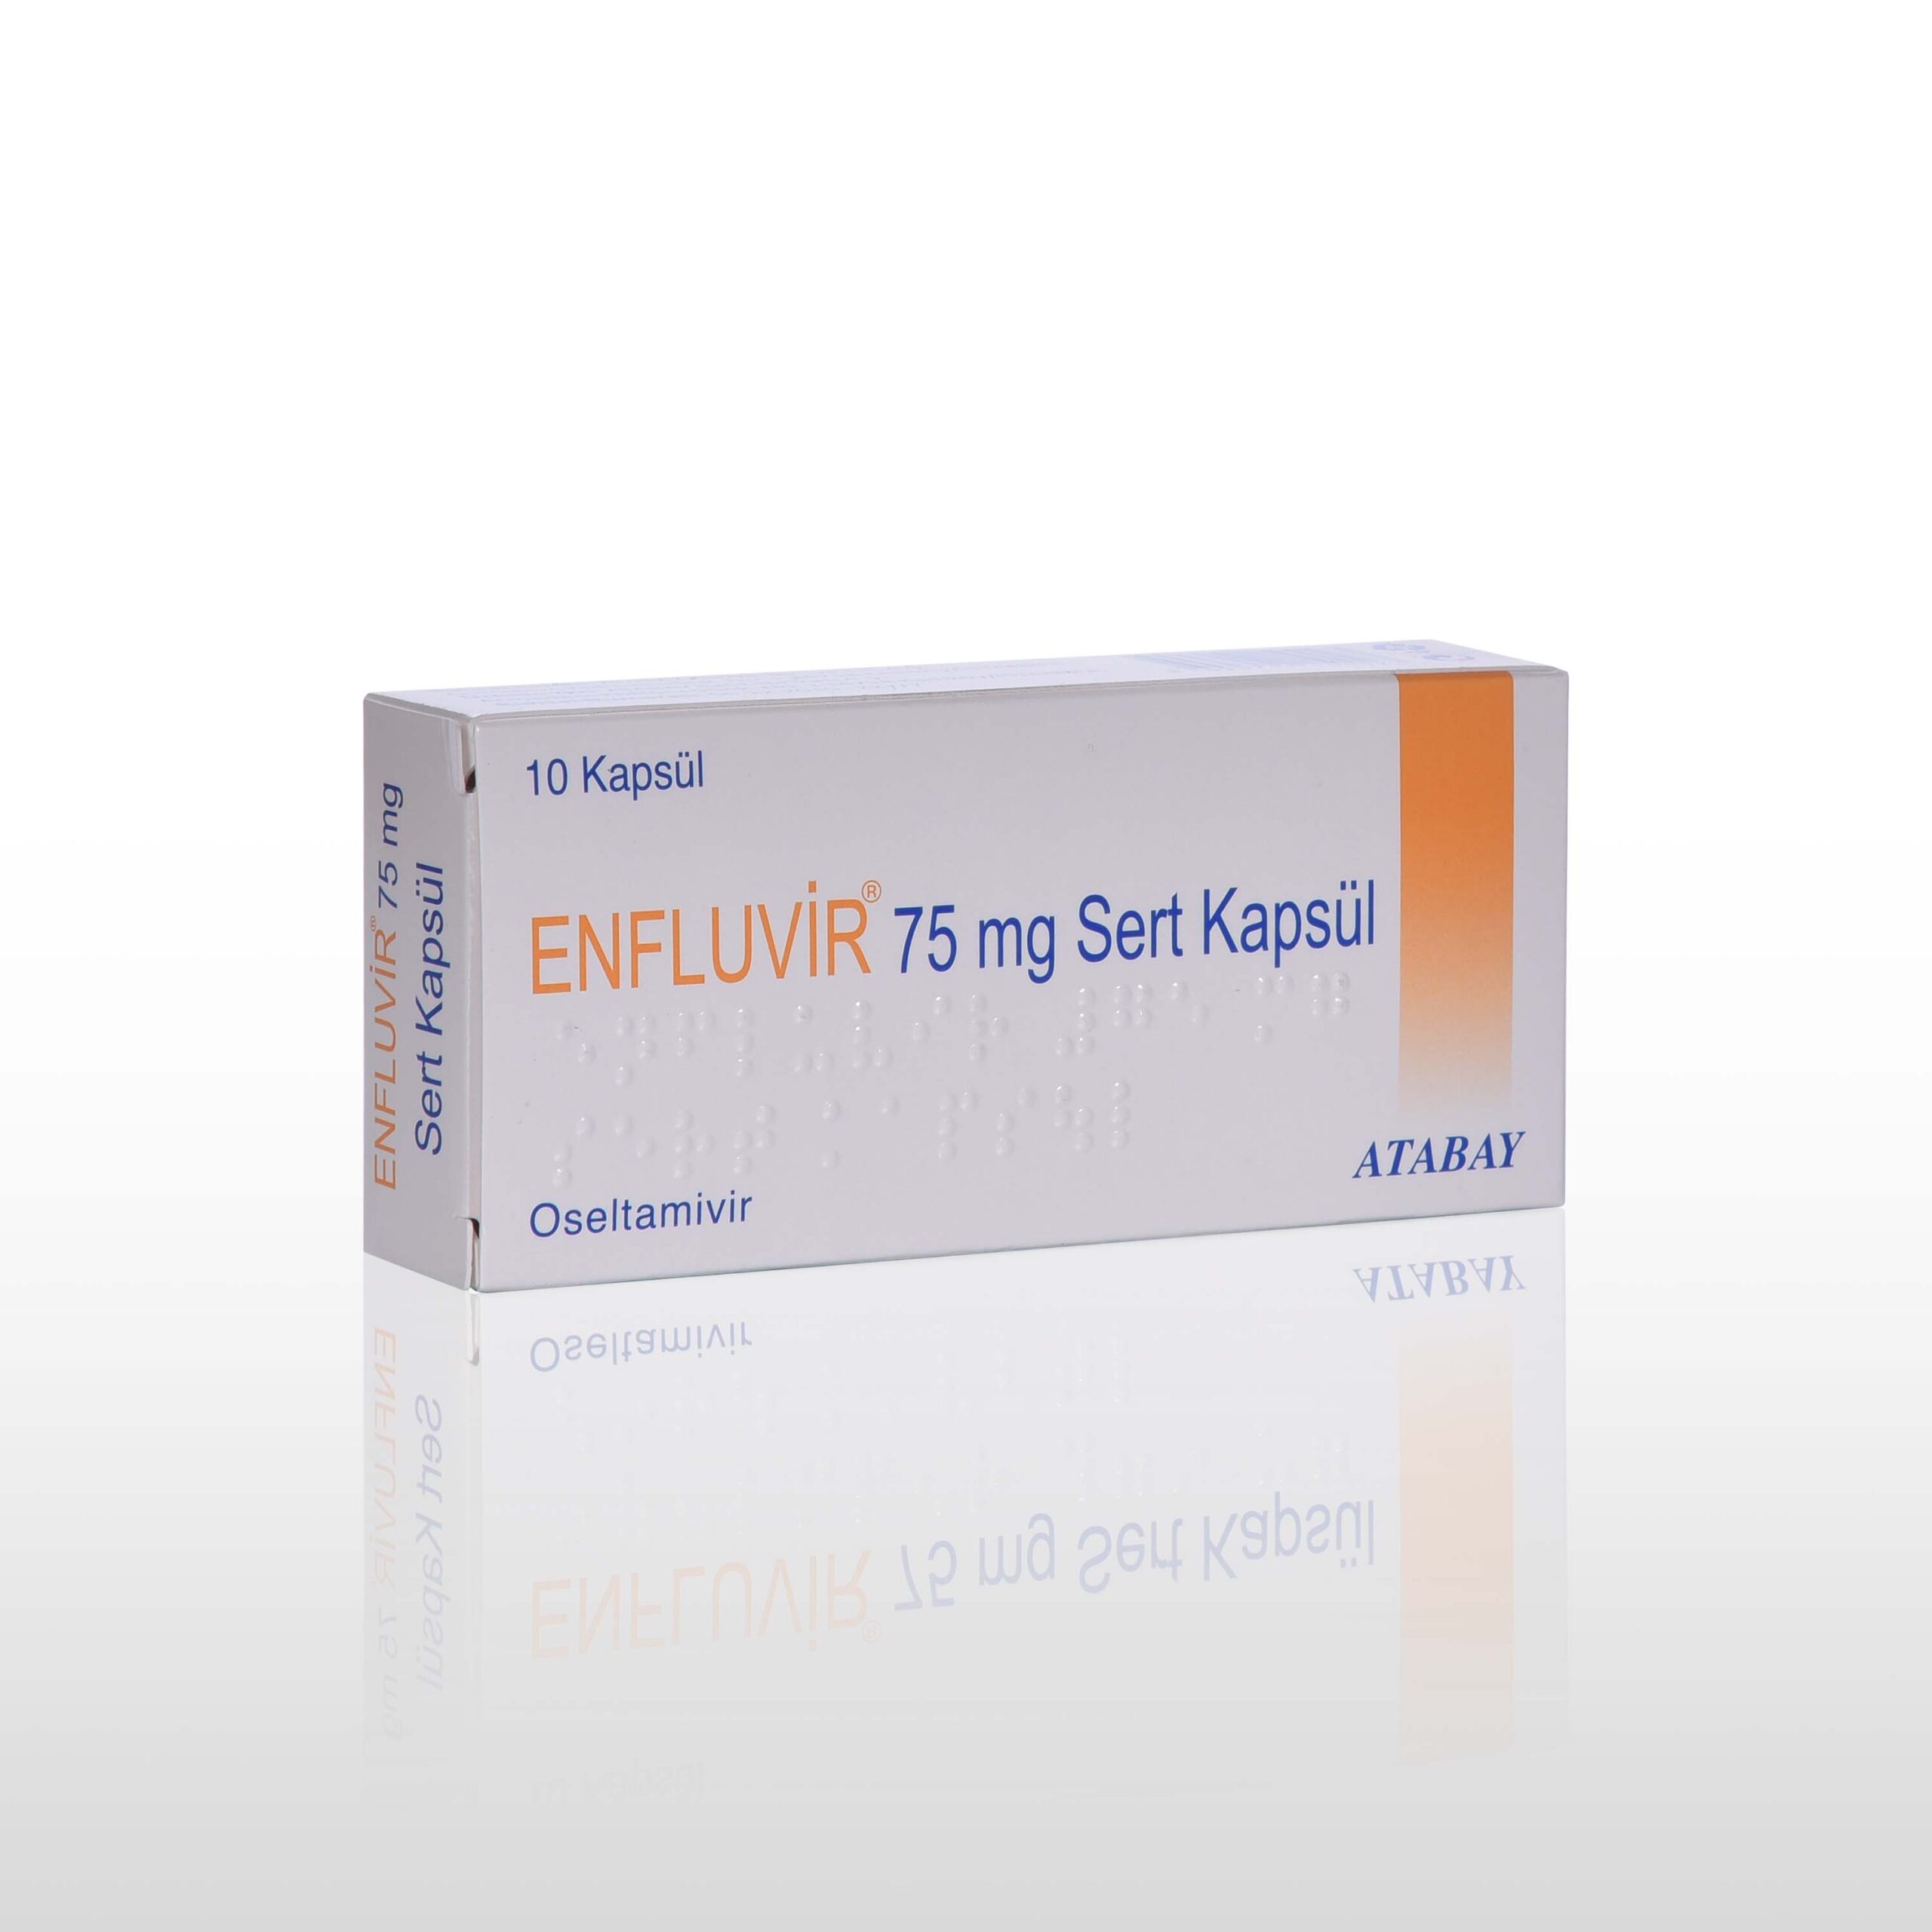 enfluvir 75 mg sert kapsül لماذا يستخدم